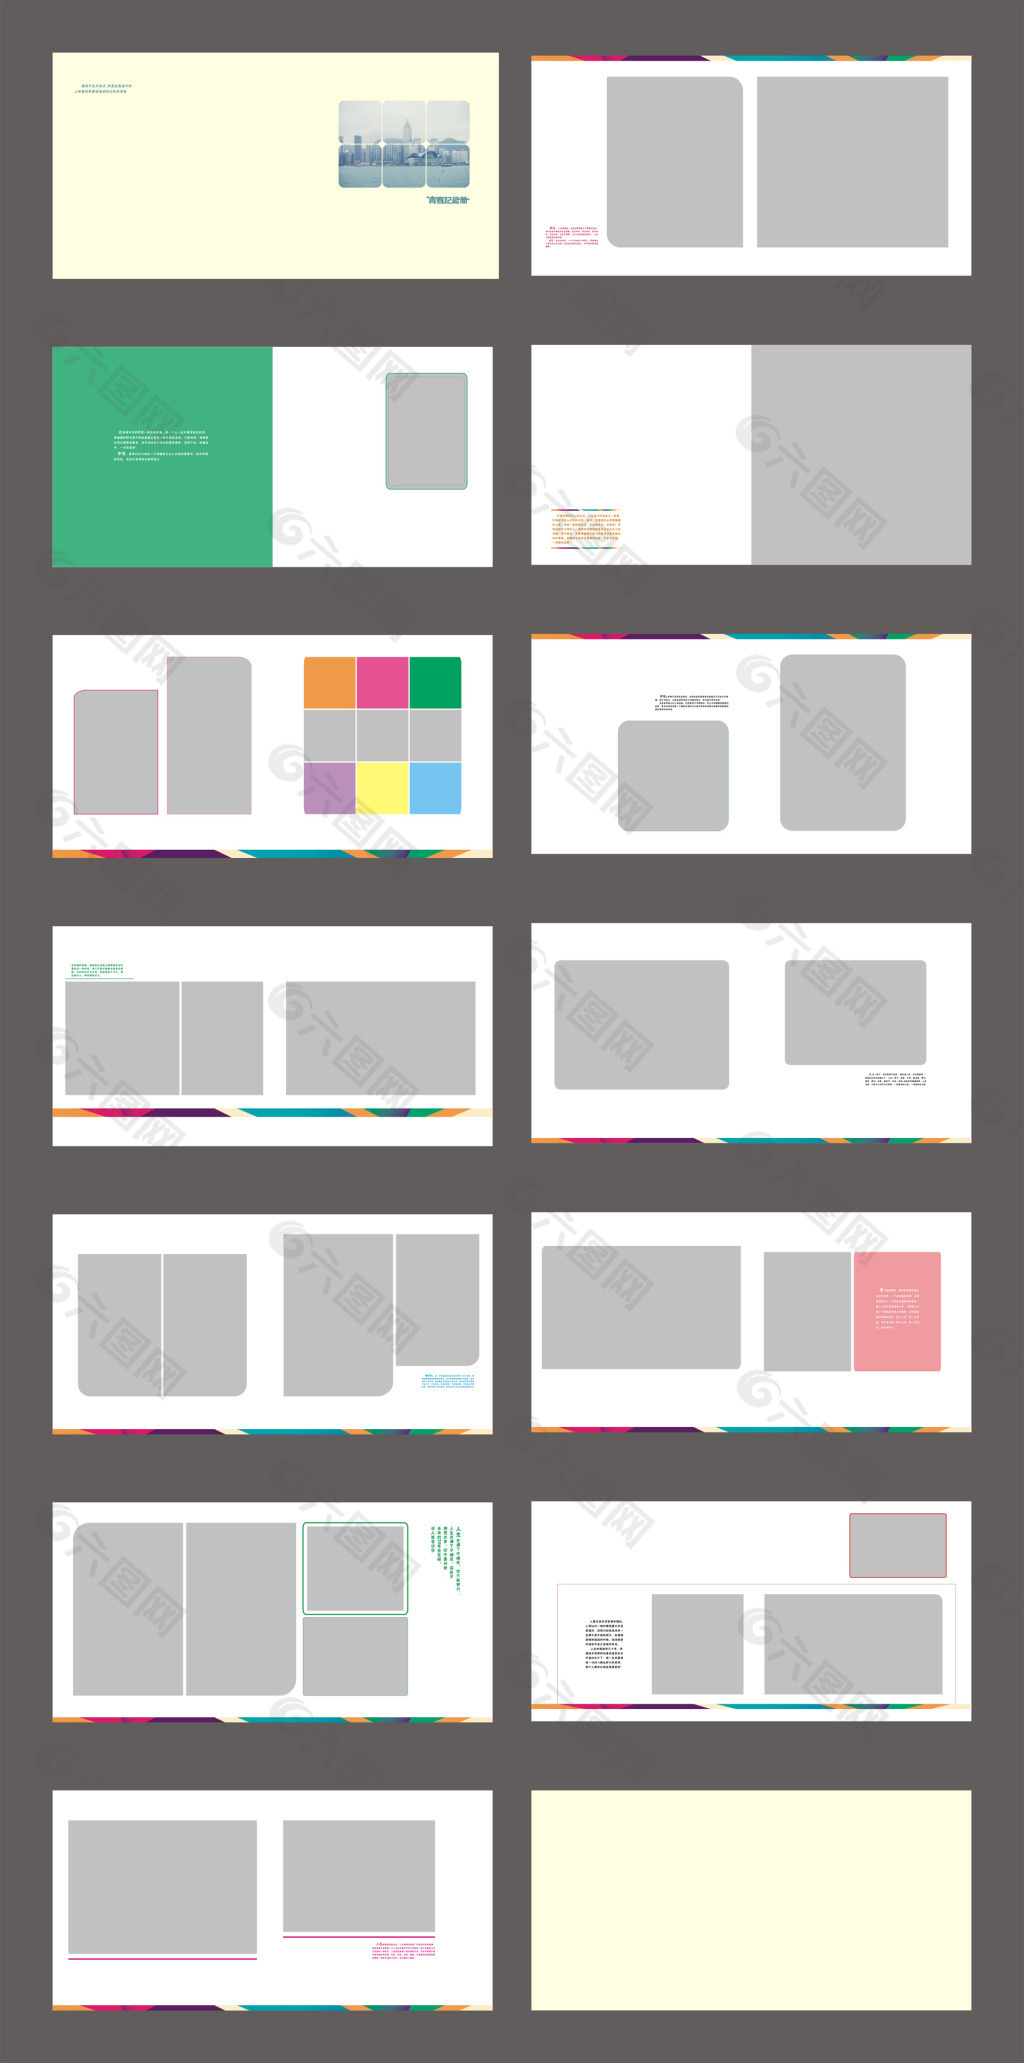 200,000+张最精彩的“Colourful Abstract Background”图片 · 100%免费下载 · Pexels素材图片